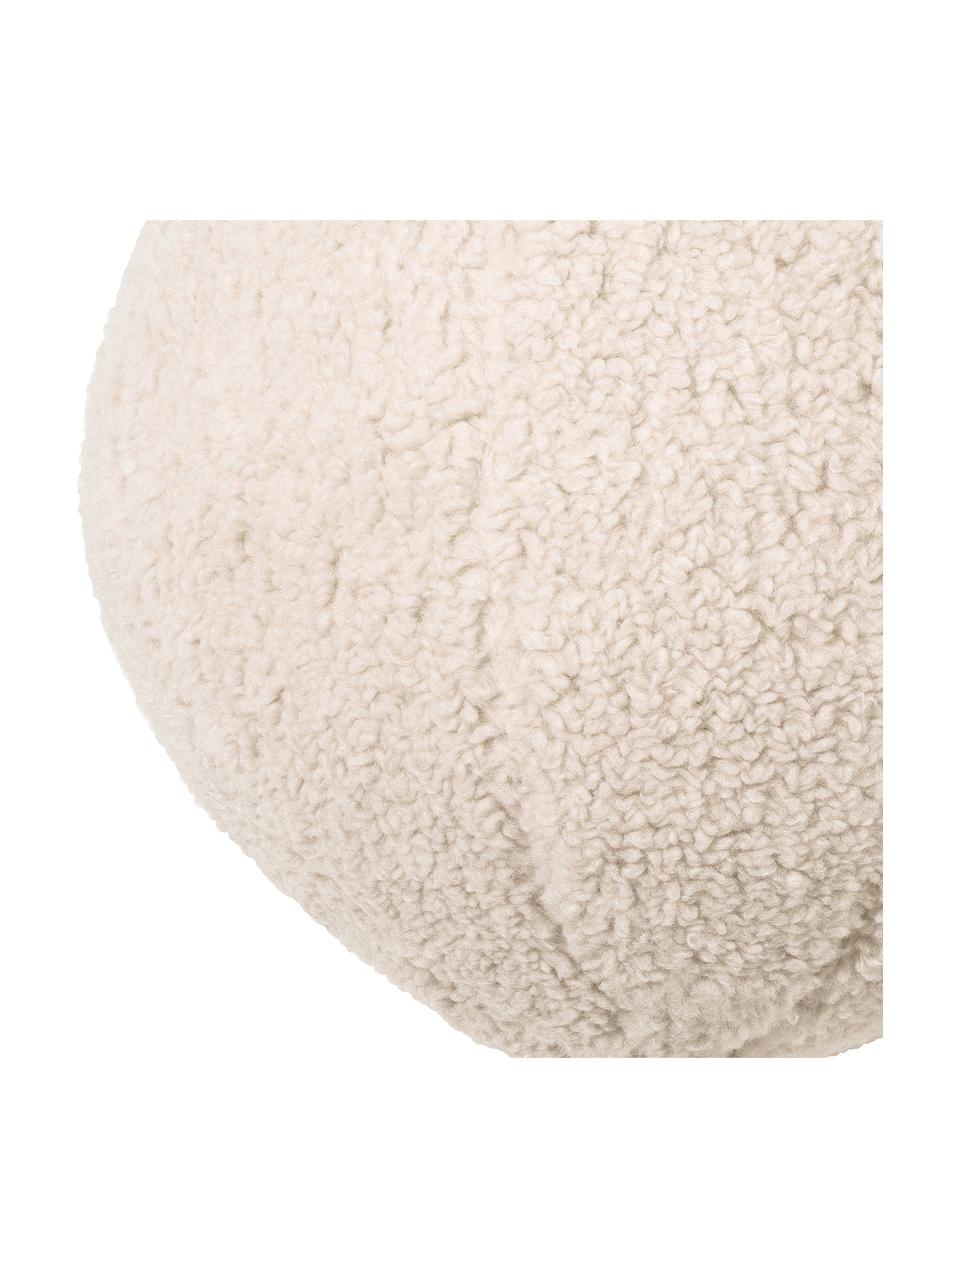 Ręcznie wykonana poduszka Teddy w kształcie kuli z wypełnieniem Palla, Tapicerka: 100% poliester, Odcienie kremowego, Ø 30 cm